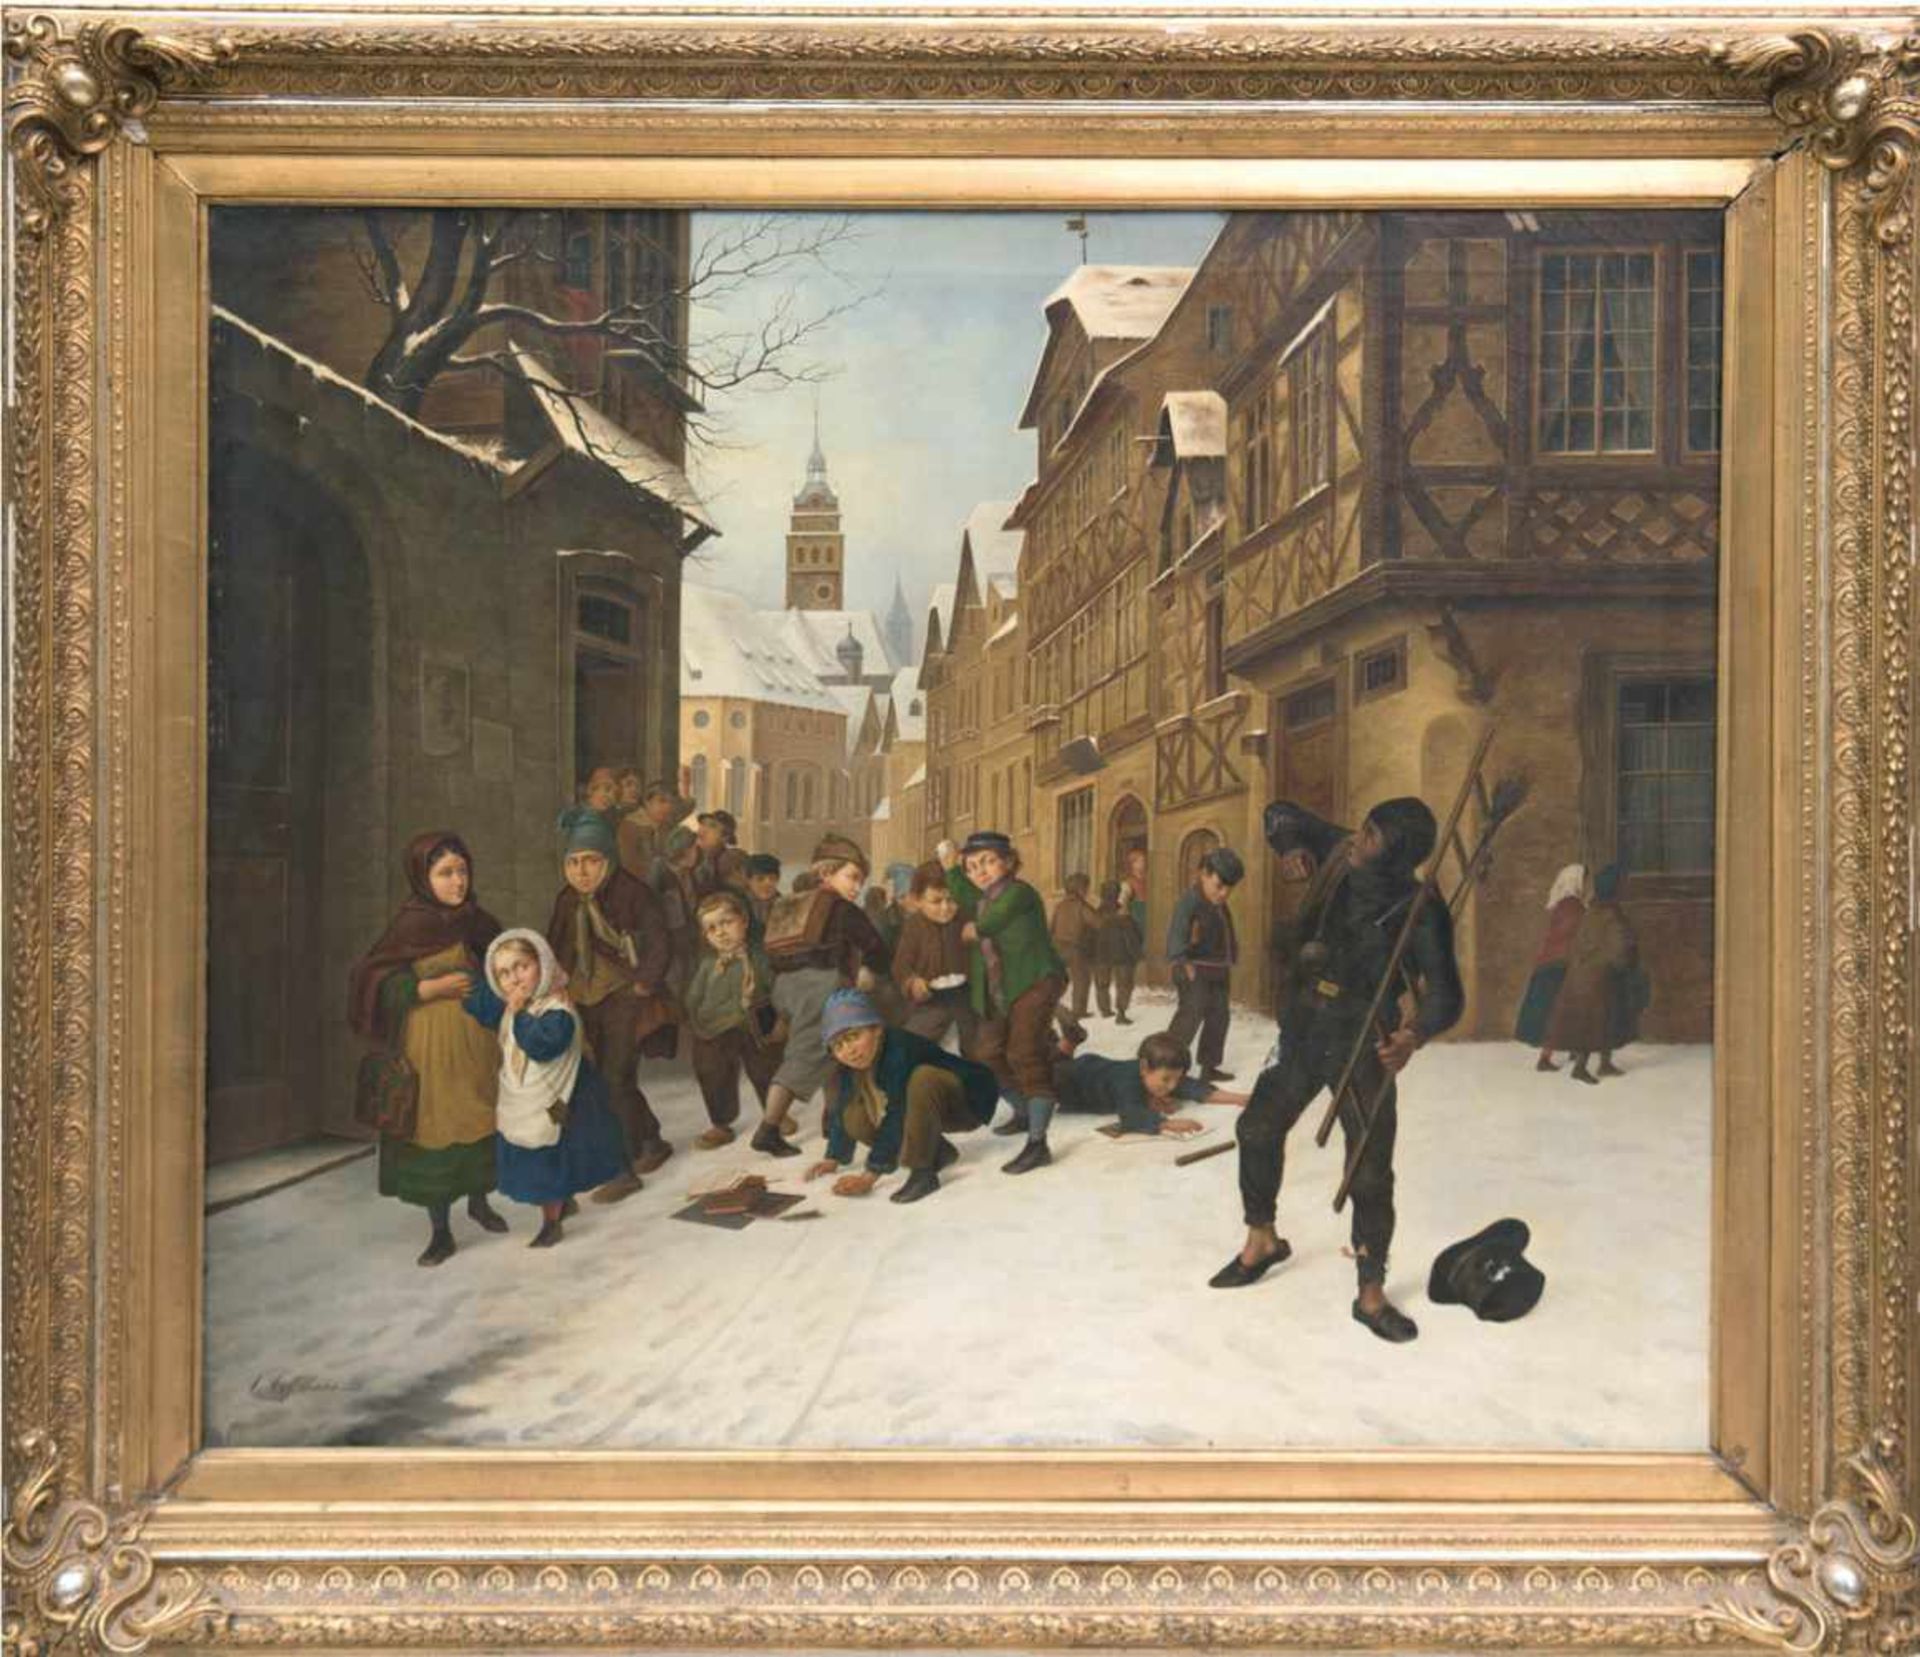 Genremaler des 19. Jh. "Nach der Sonntagsschule", Öl/Lw., sign. und dat. u.l. "C. Cossmann1880",